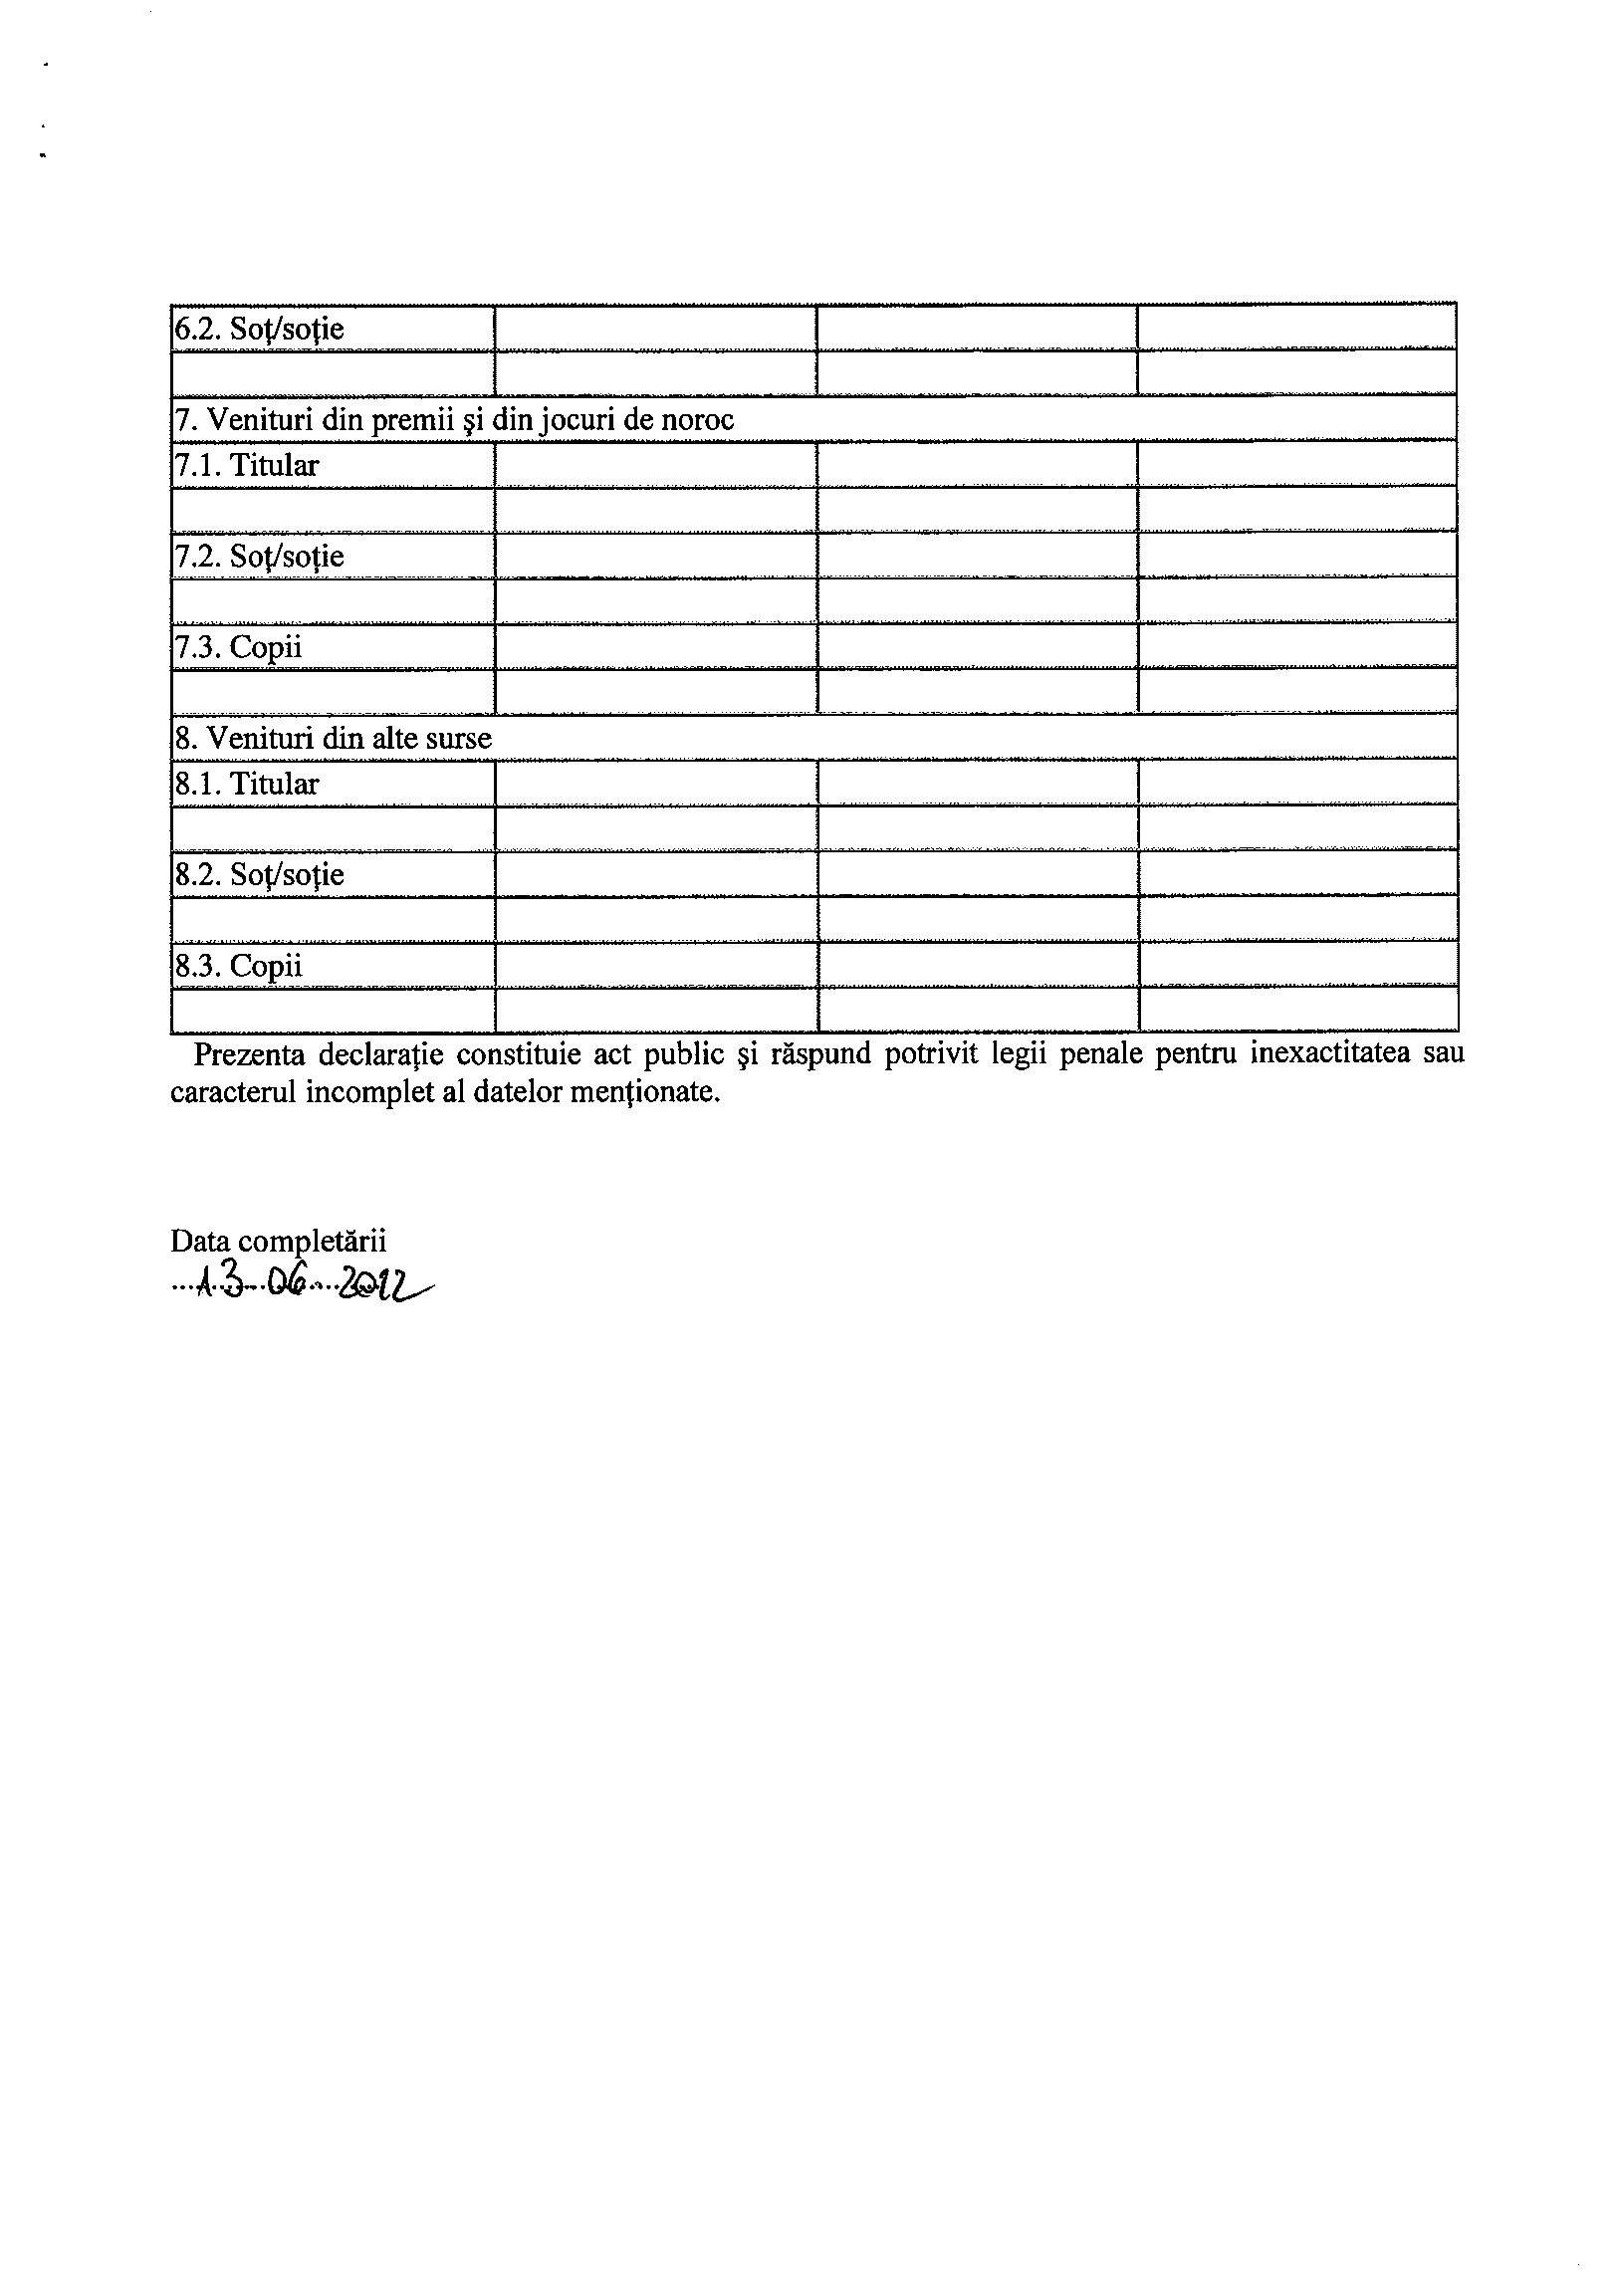 Declaratia de avere si de interese din data 12.07.2012 - pagina 5 din 6